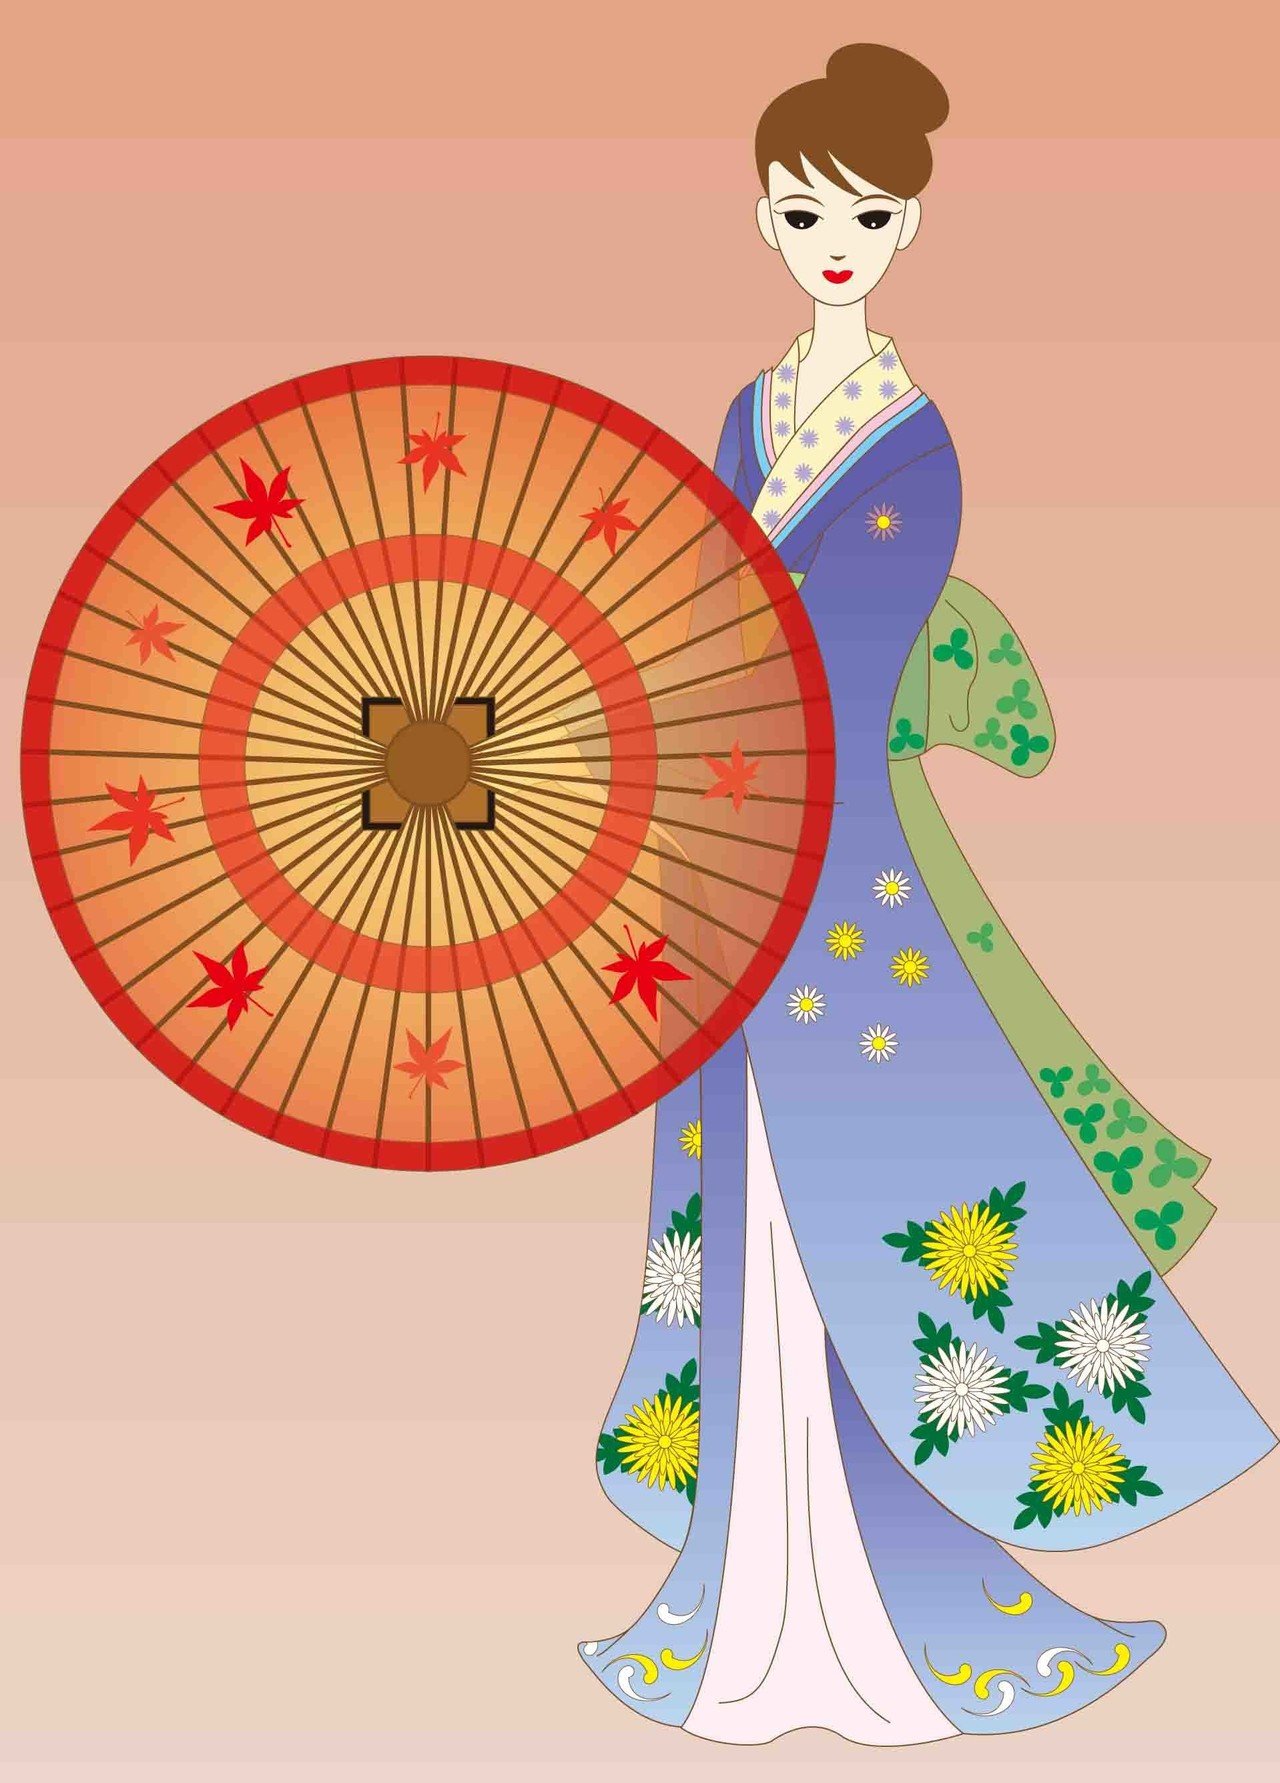 タイトル 秋の舞 日本舞踊で表現された 美しい舞から受けたイメージをイラスト に描きました 秋 にふさわしく 菊と紅葉の模様で彩りました たいら礼子の造形開発室 Note